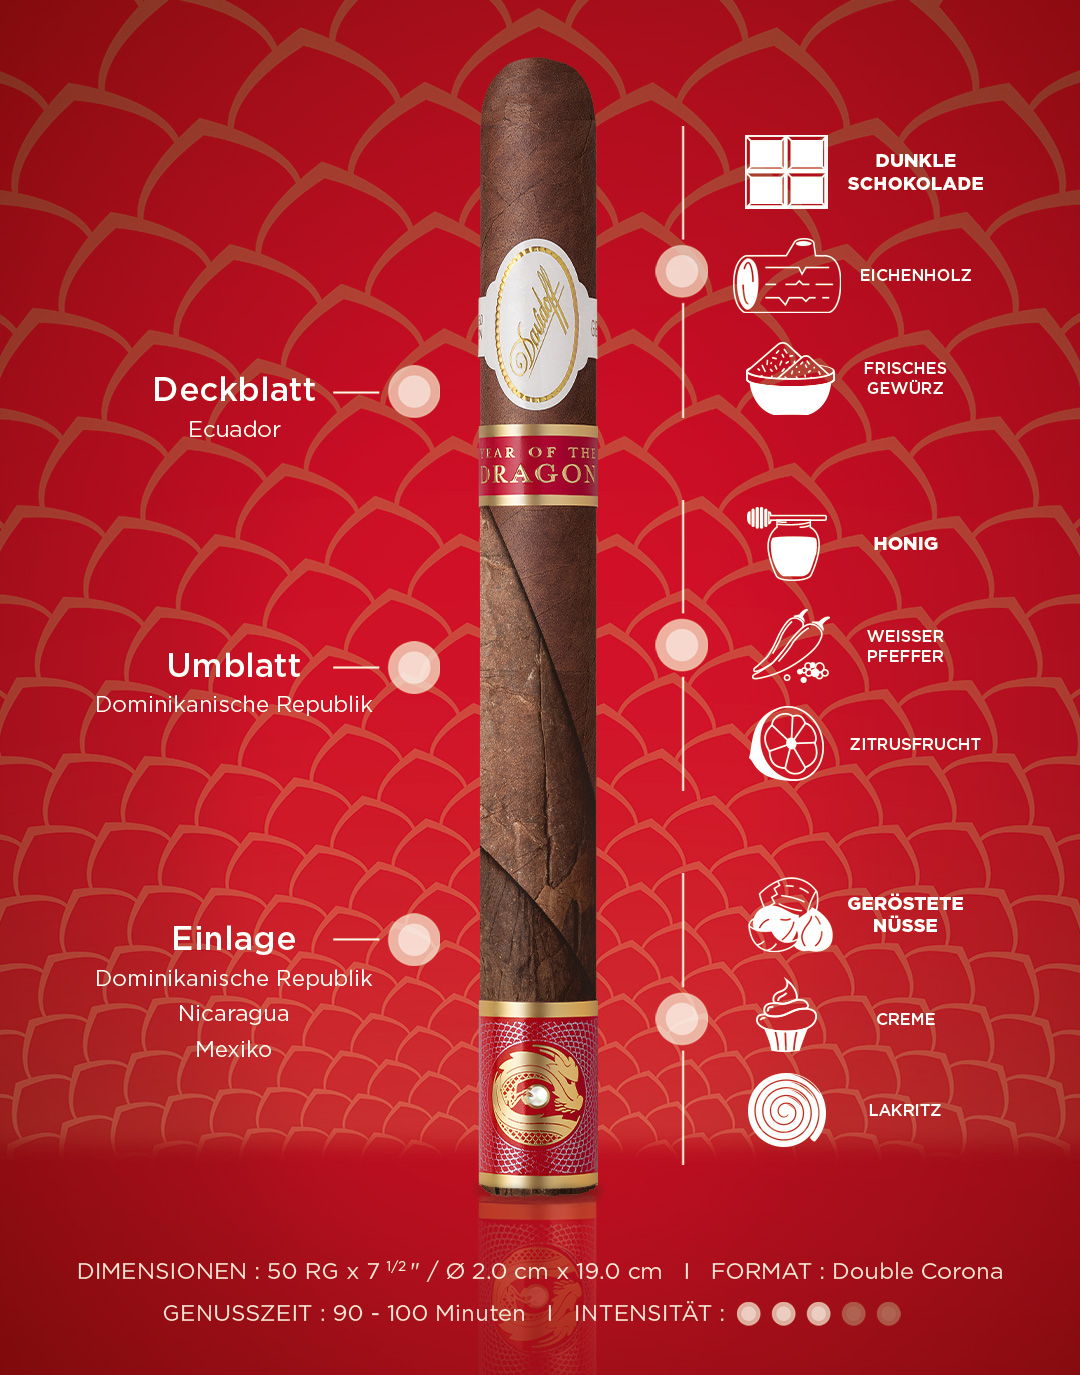 Geschmacksdetails der Davidoff Year of the Dragon Double-Corona-Zigarre inklusive Aromen, Genusszeit, Dimensionen und Intensität.